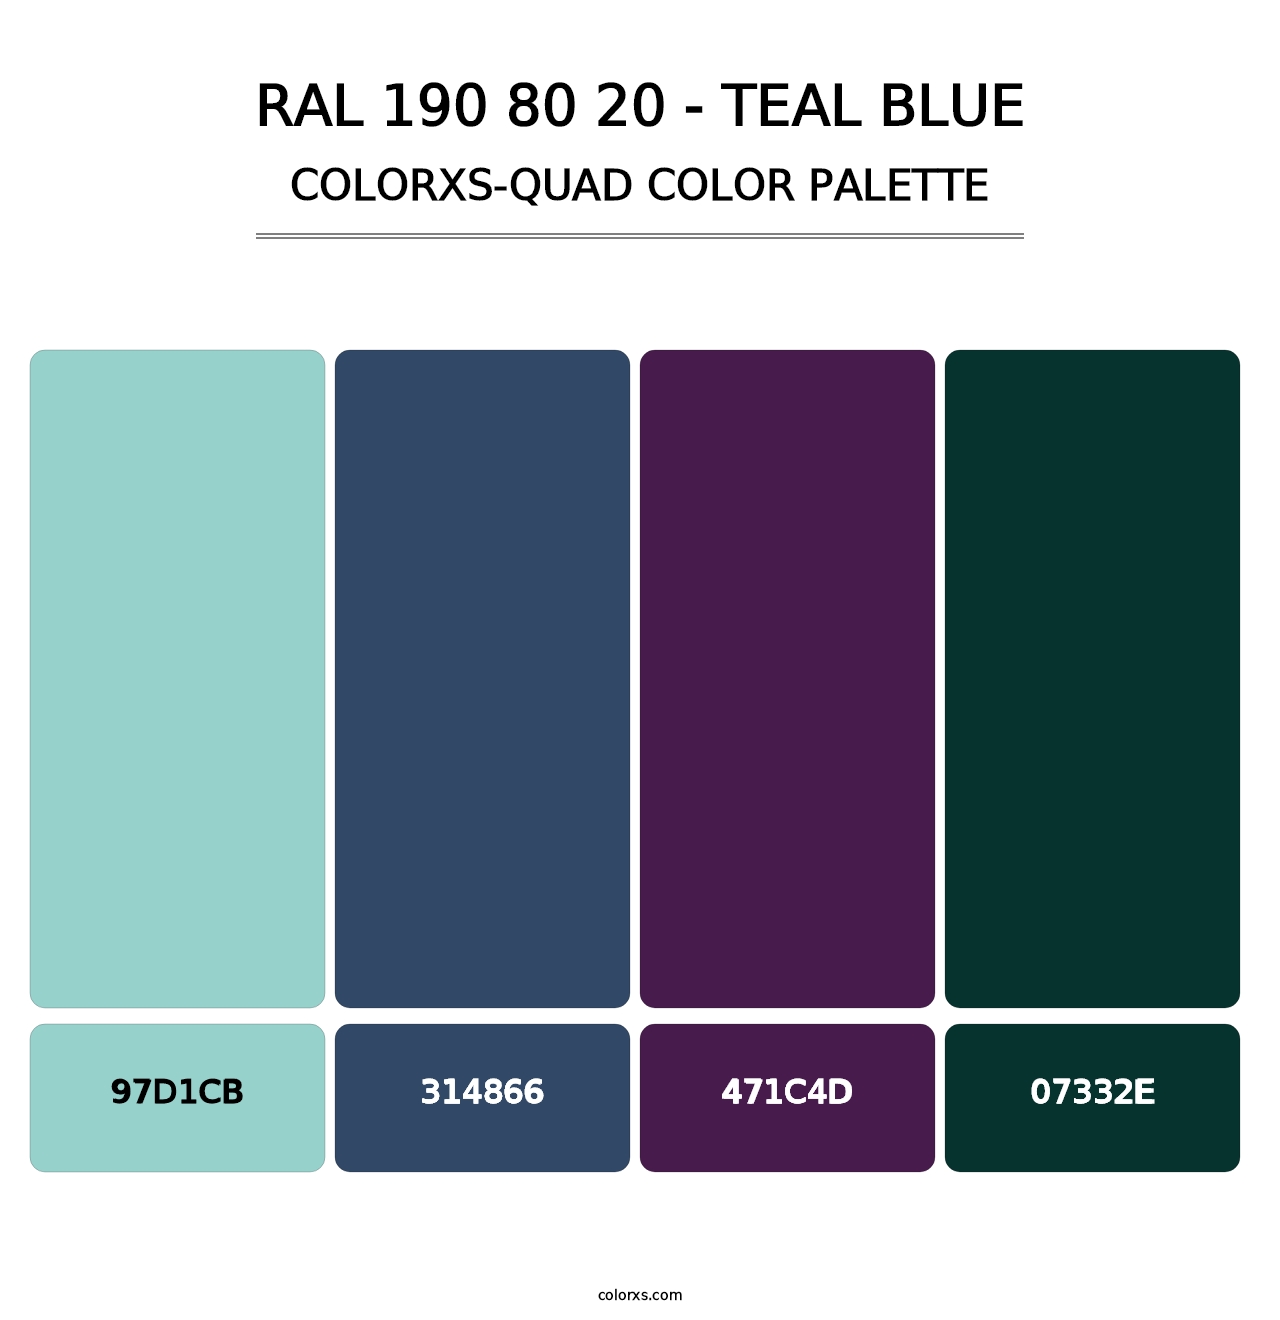 RAL 190 80 20 - Teal Blue - Colorxs Quad Palette